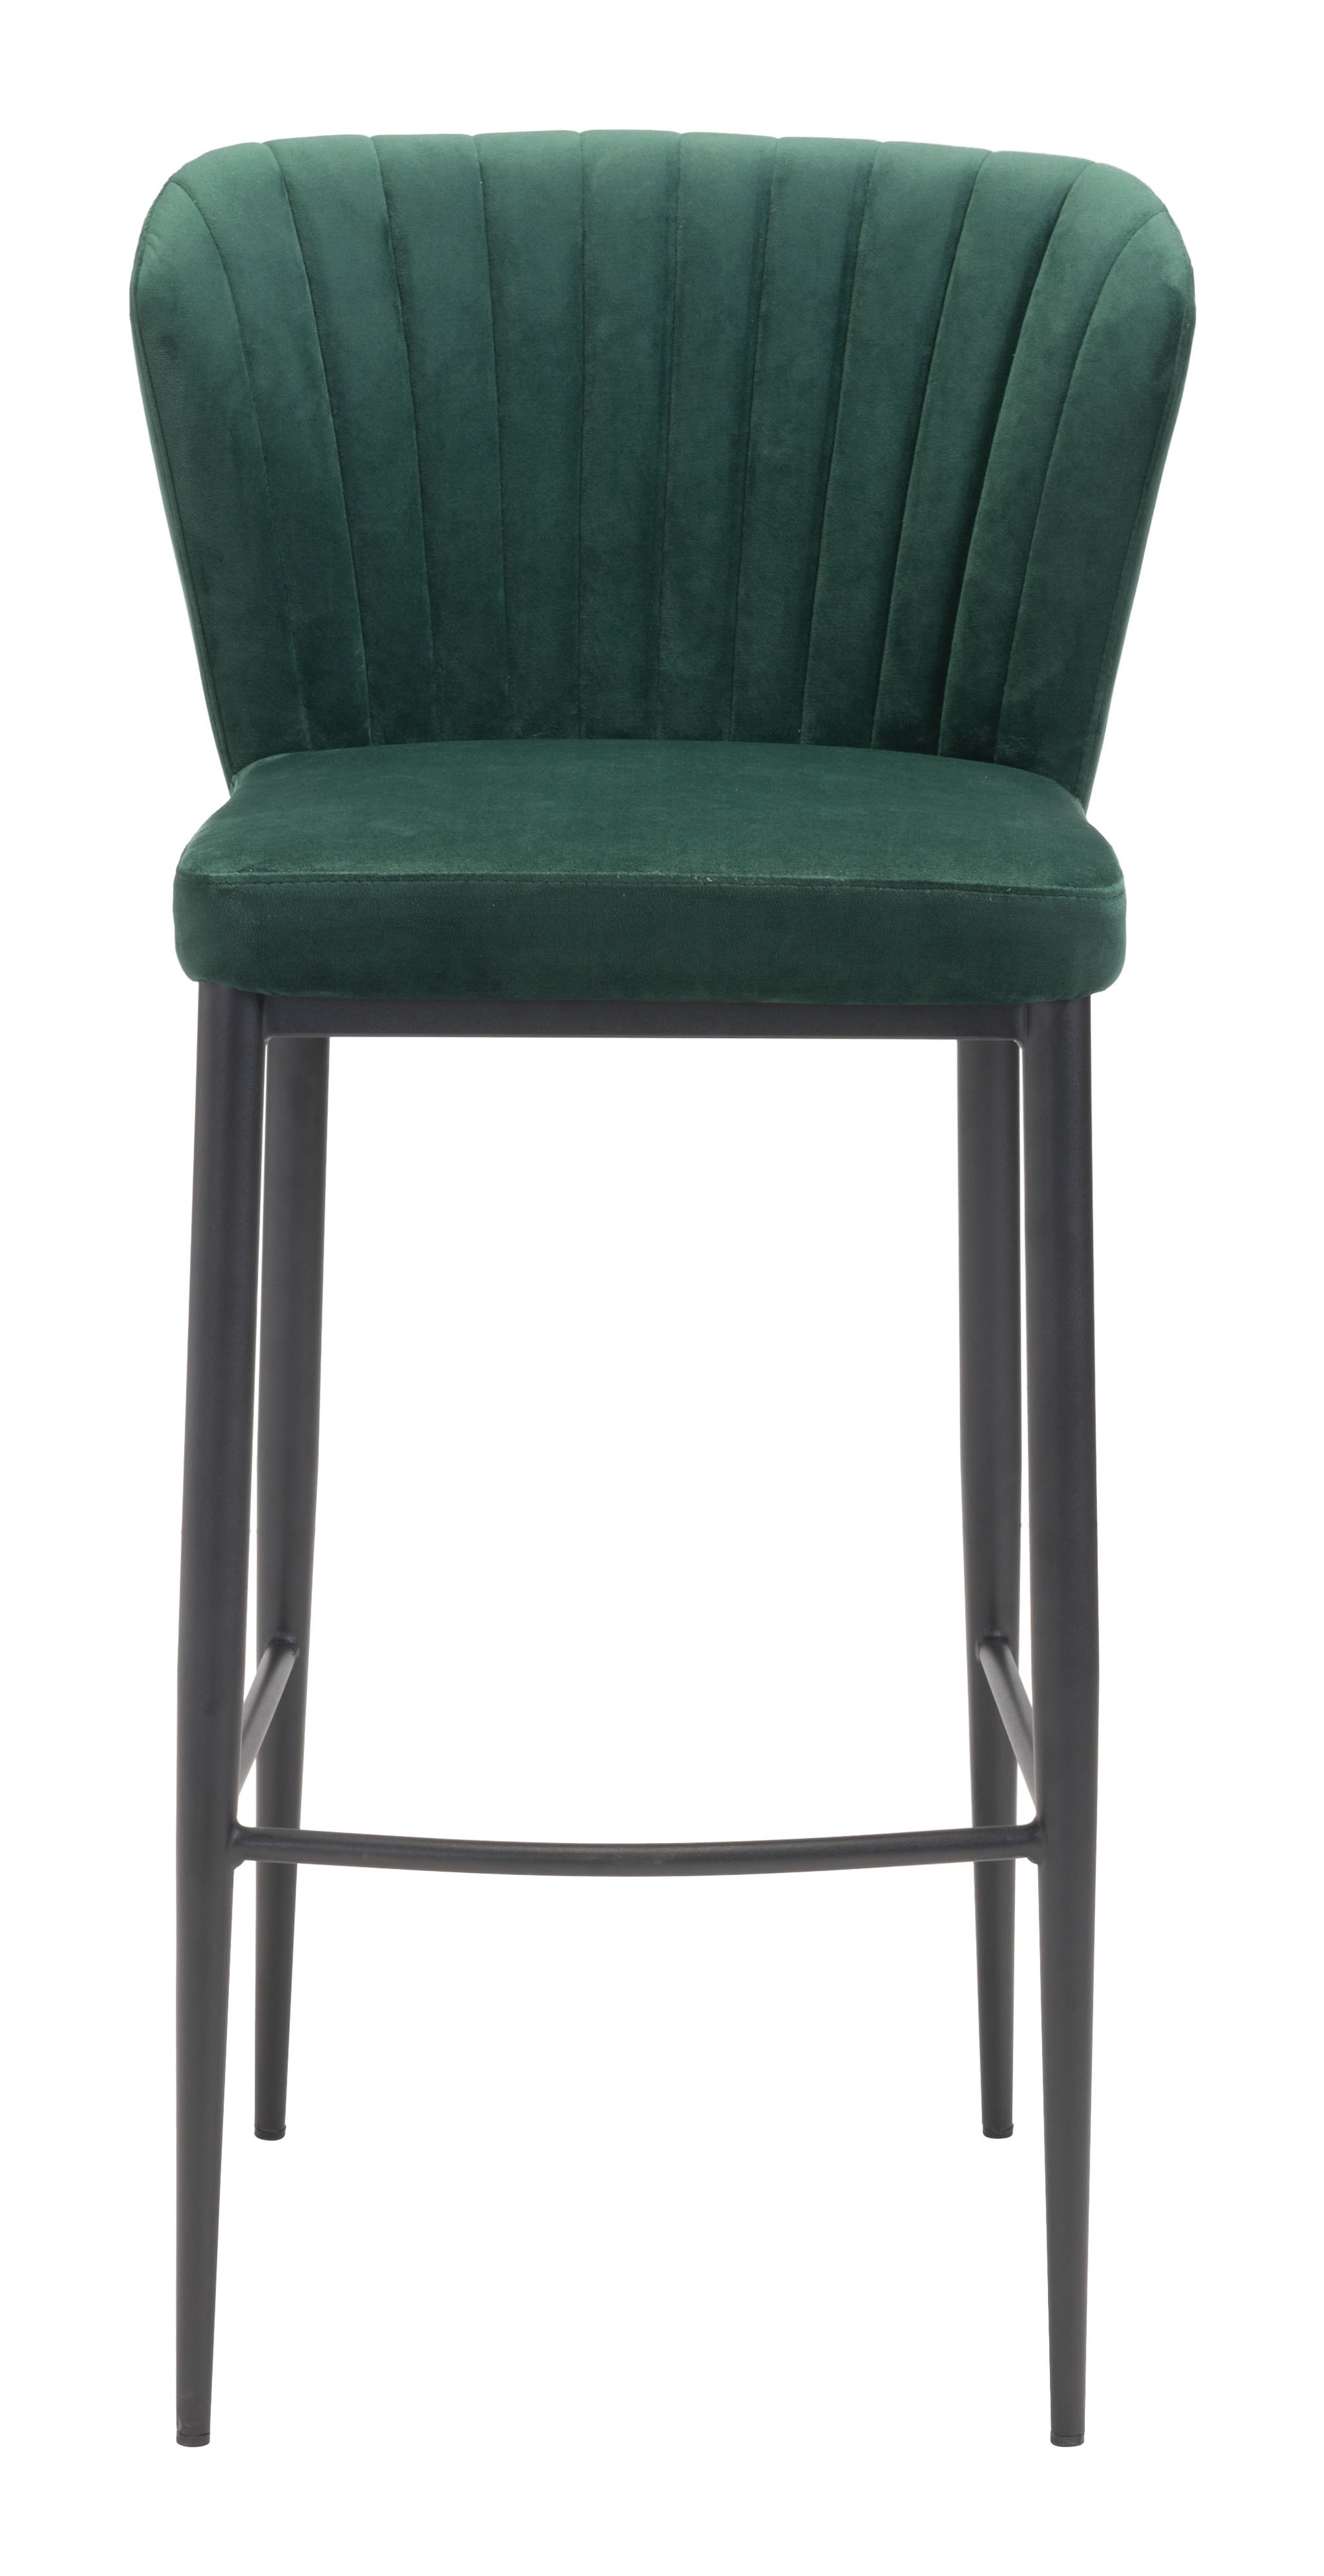 20.9" x 21.9" x 41.3" Green, Velvet, Stainless Steel, Bar Chair - Set of 2